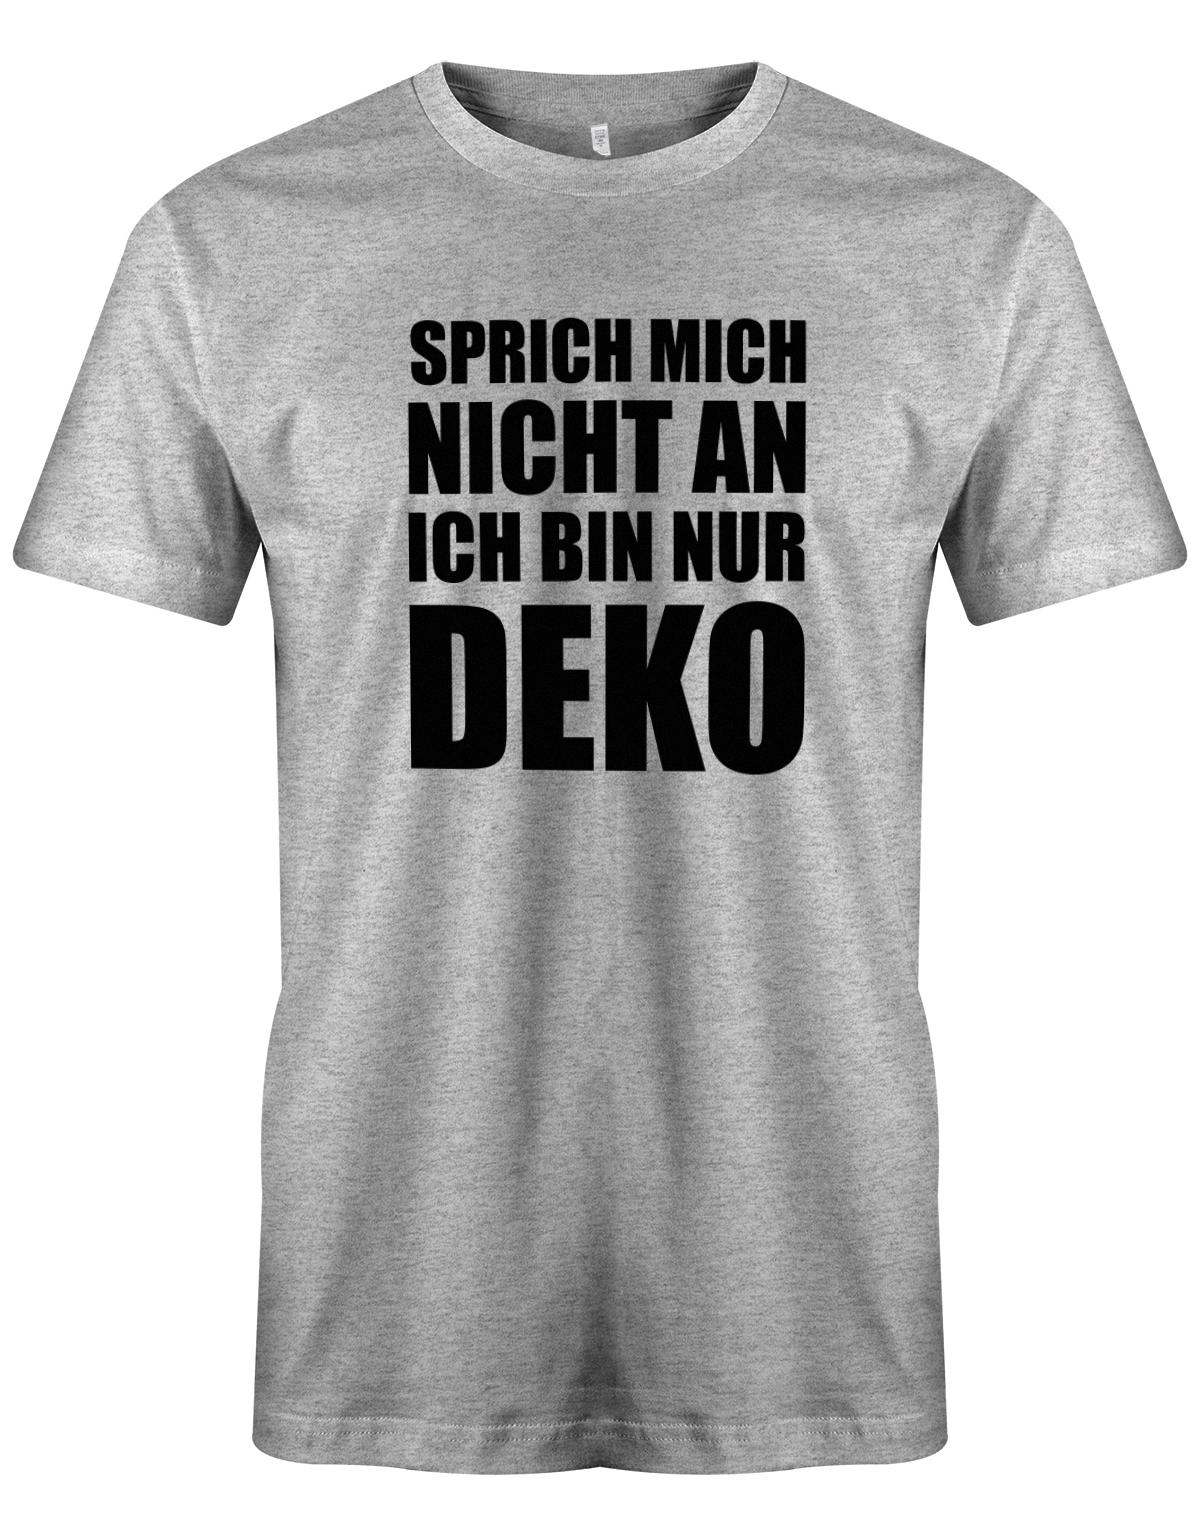 https://myshirtstore.de/cdn/shop/products/Sprich-mich-nicht-an-ich-bin-nur-deko-Herren-Shirt-Grau.jpg?v=1666125774&width=1445